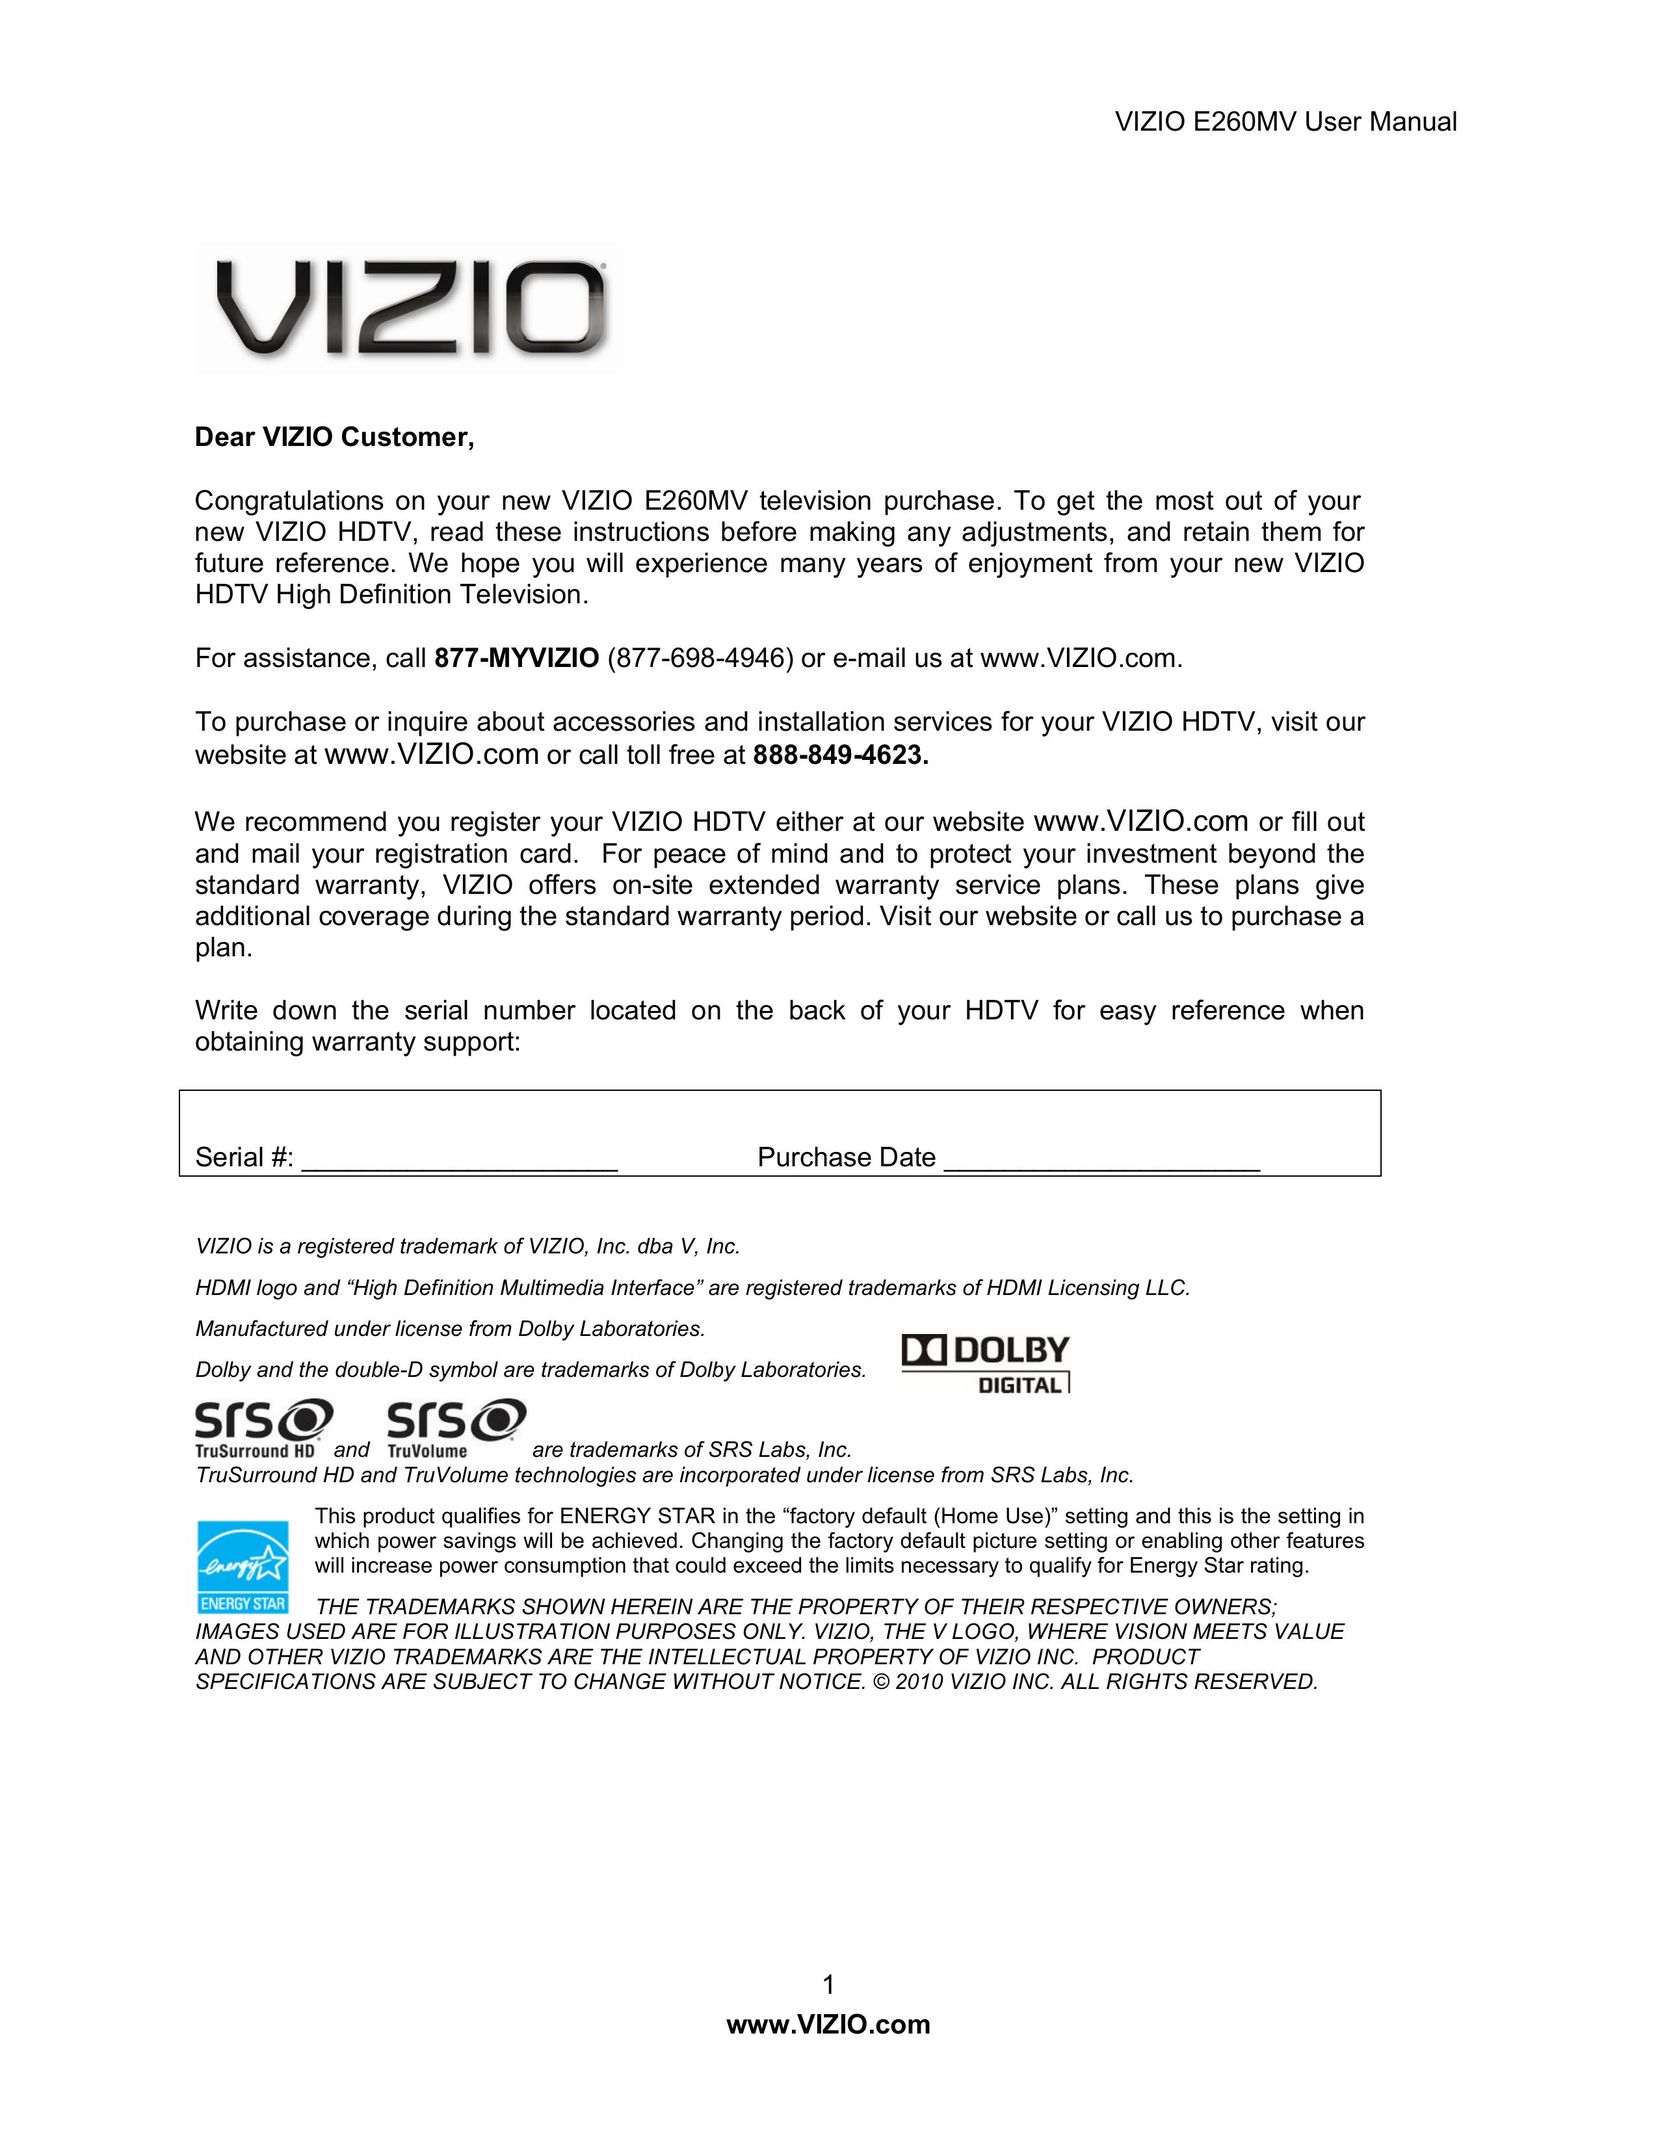 Vizio E260MV CRT Television User Manual